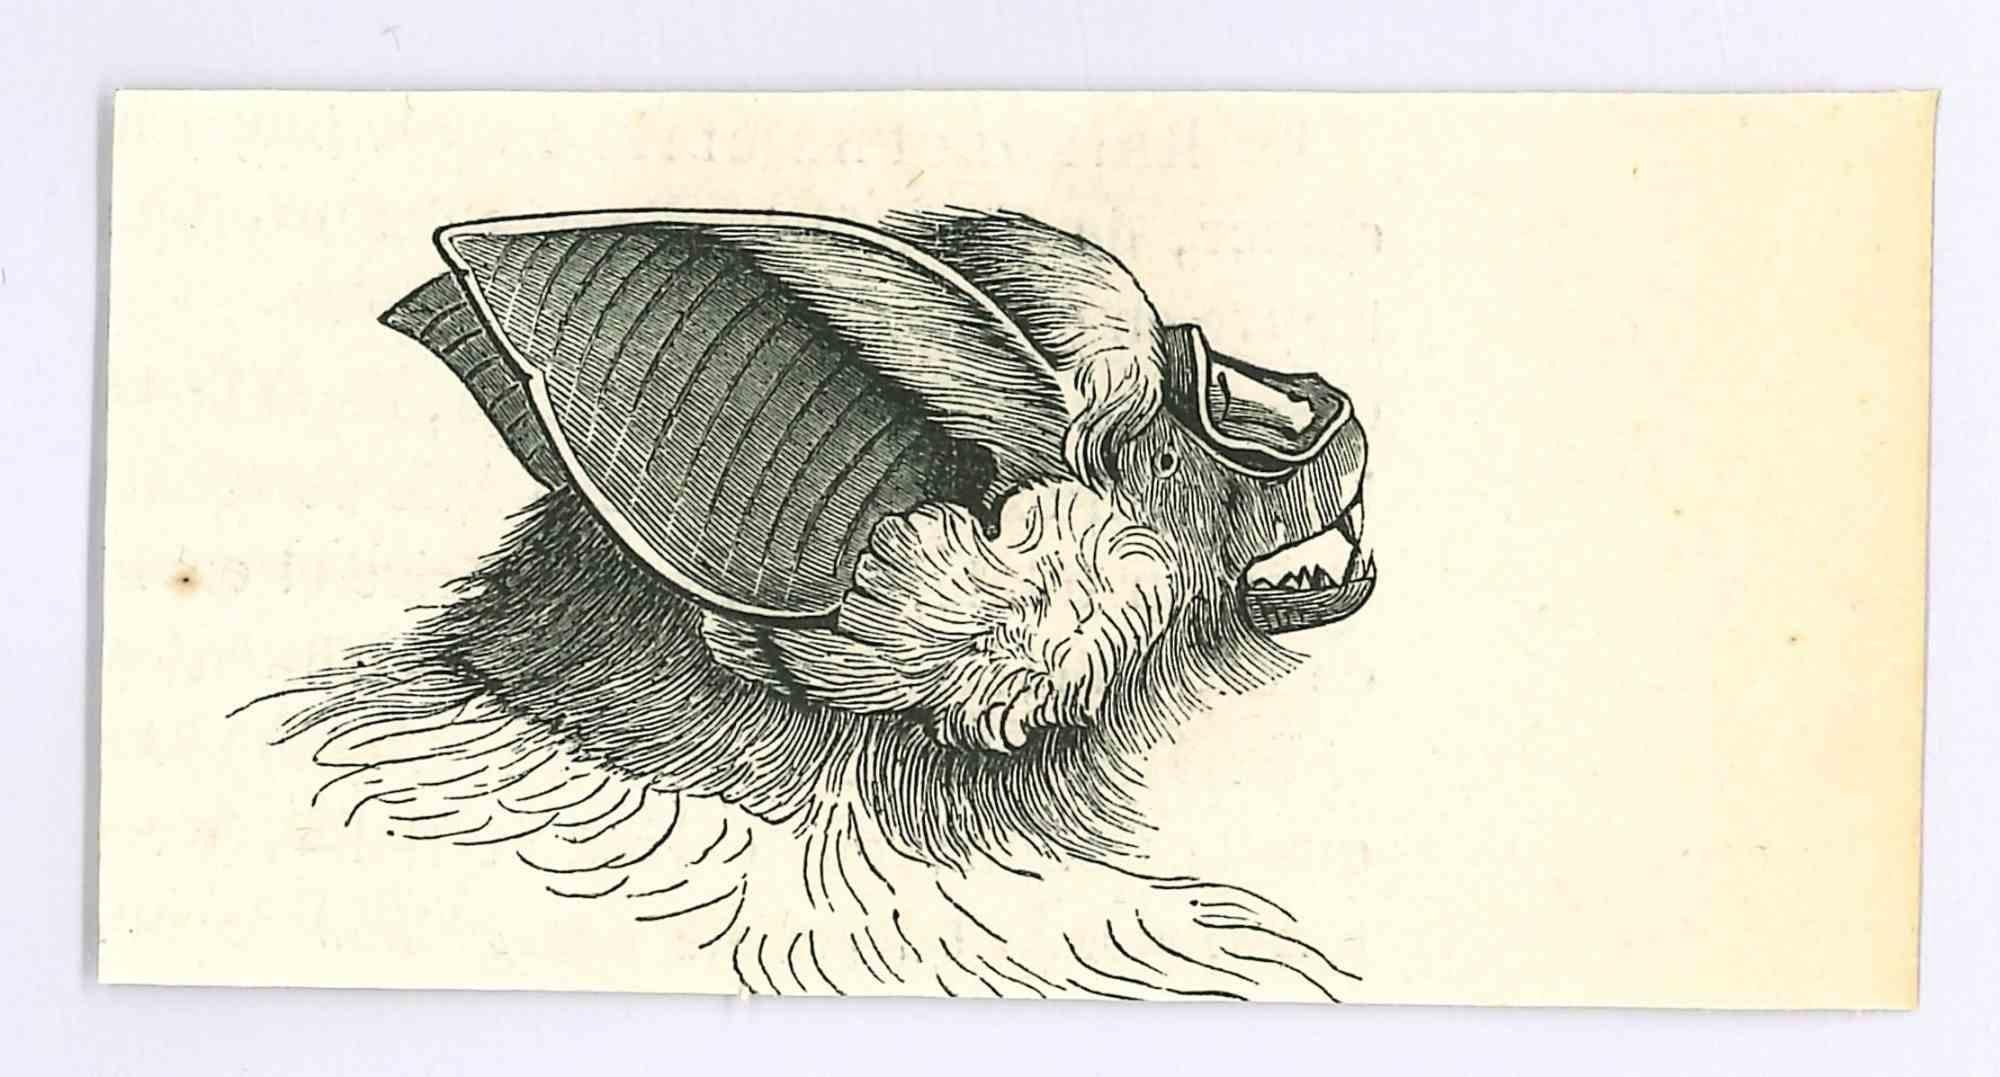 La chameau - Lithographie de Paul Gervais - 1854